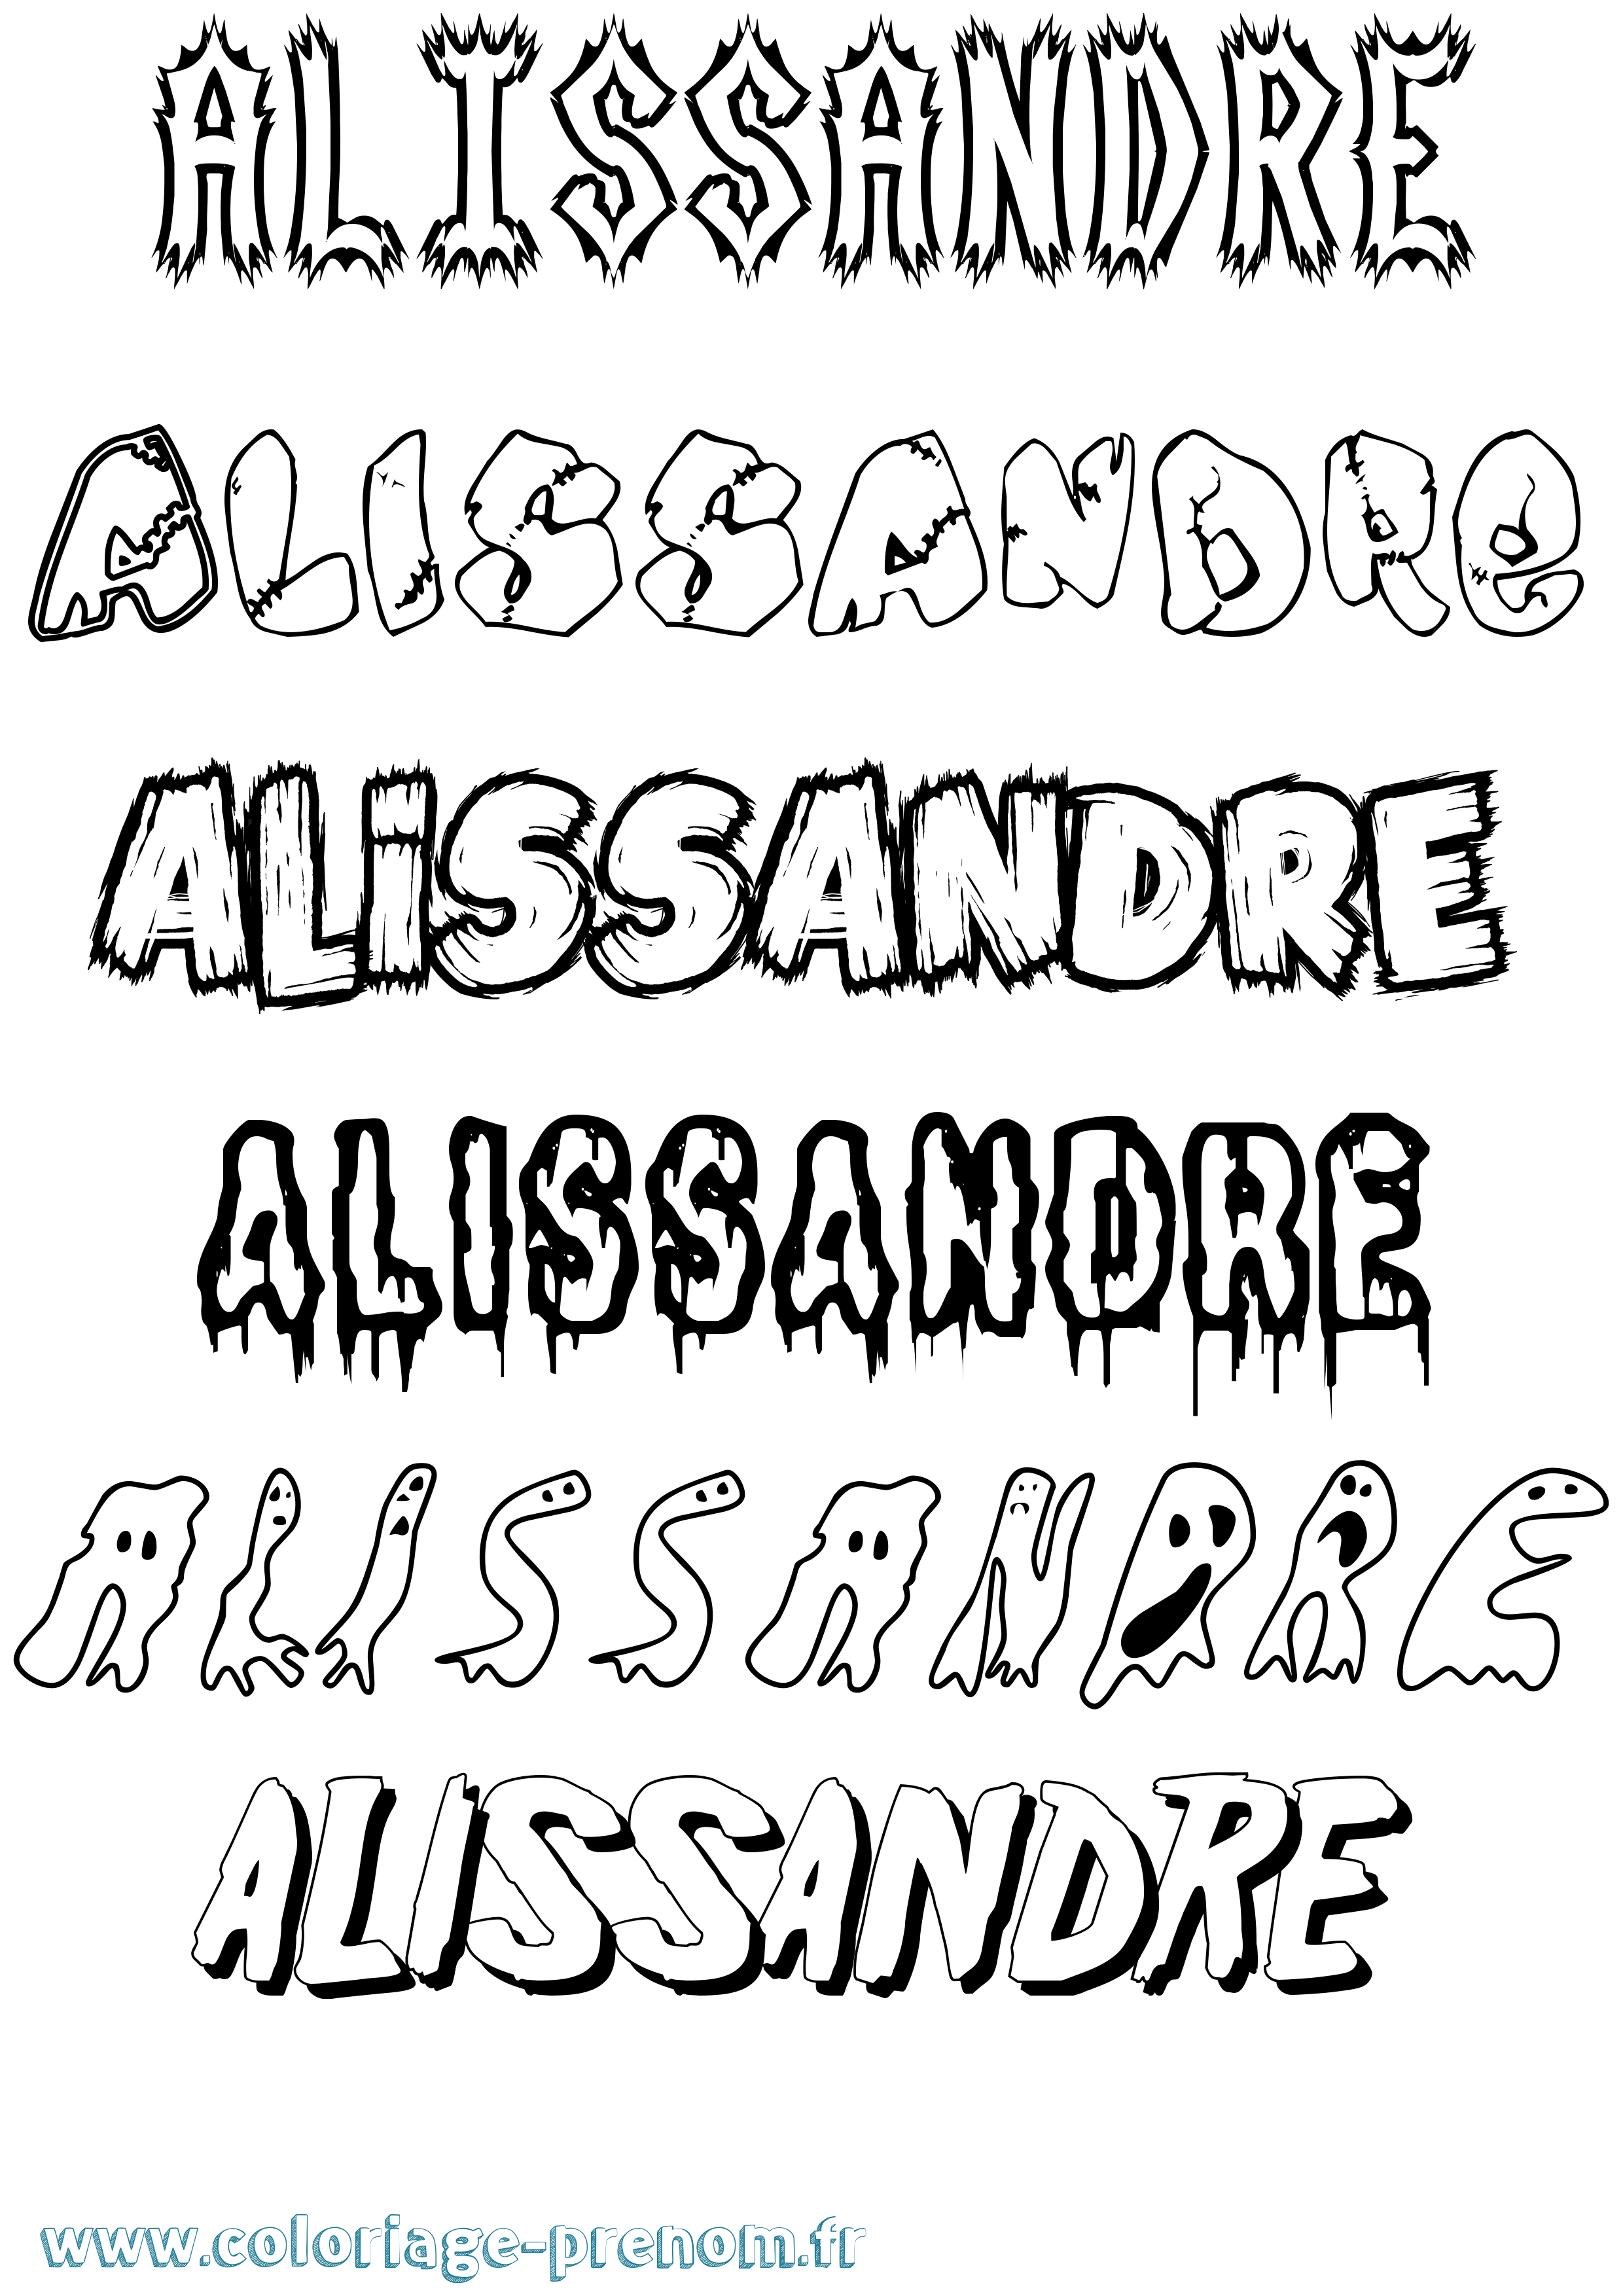 Coloriage prénom Alissandre Frisson